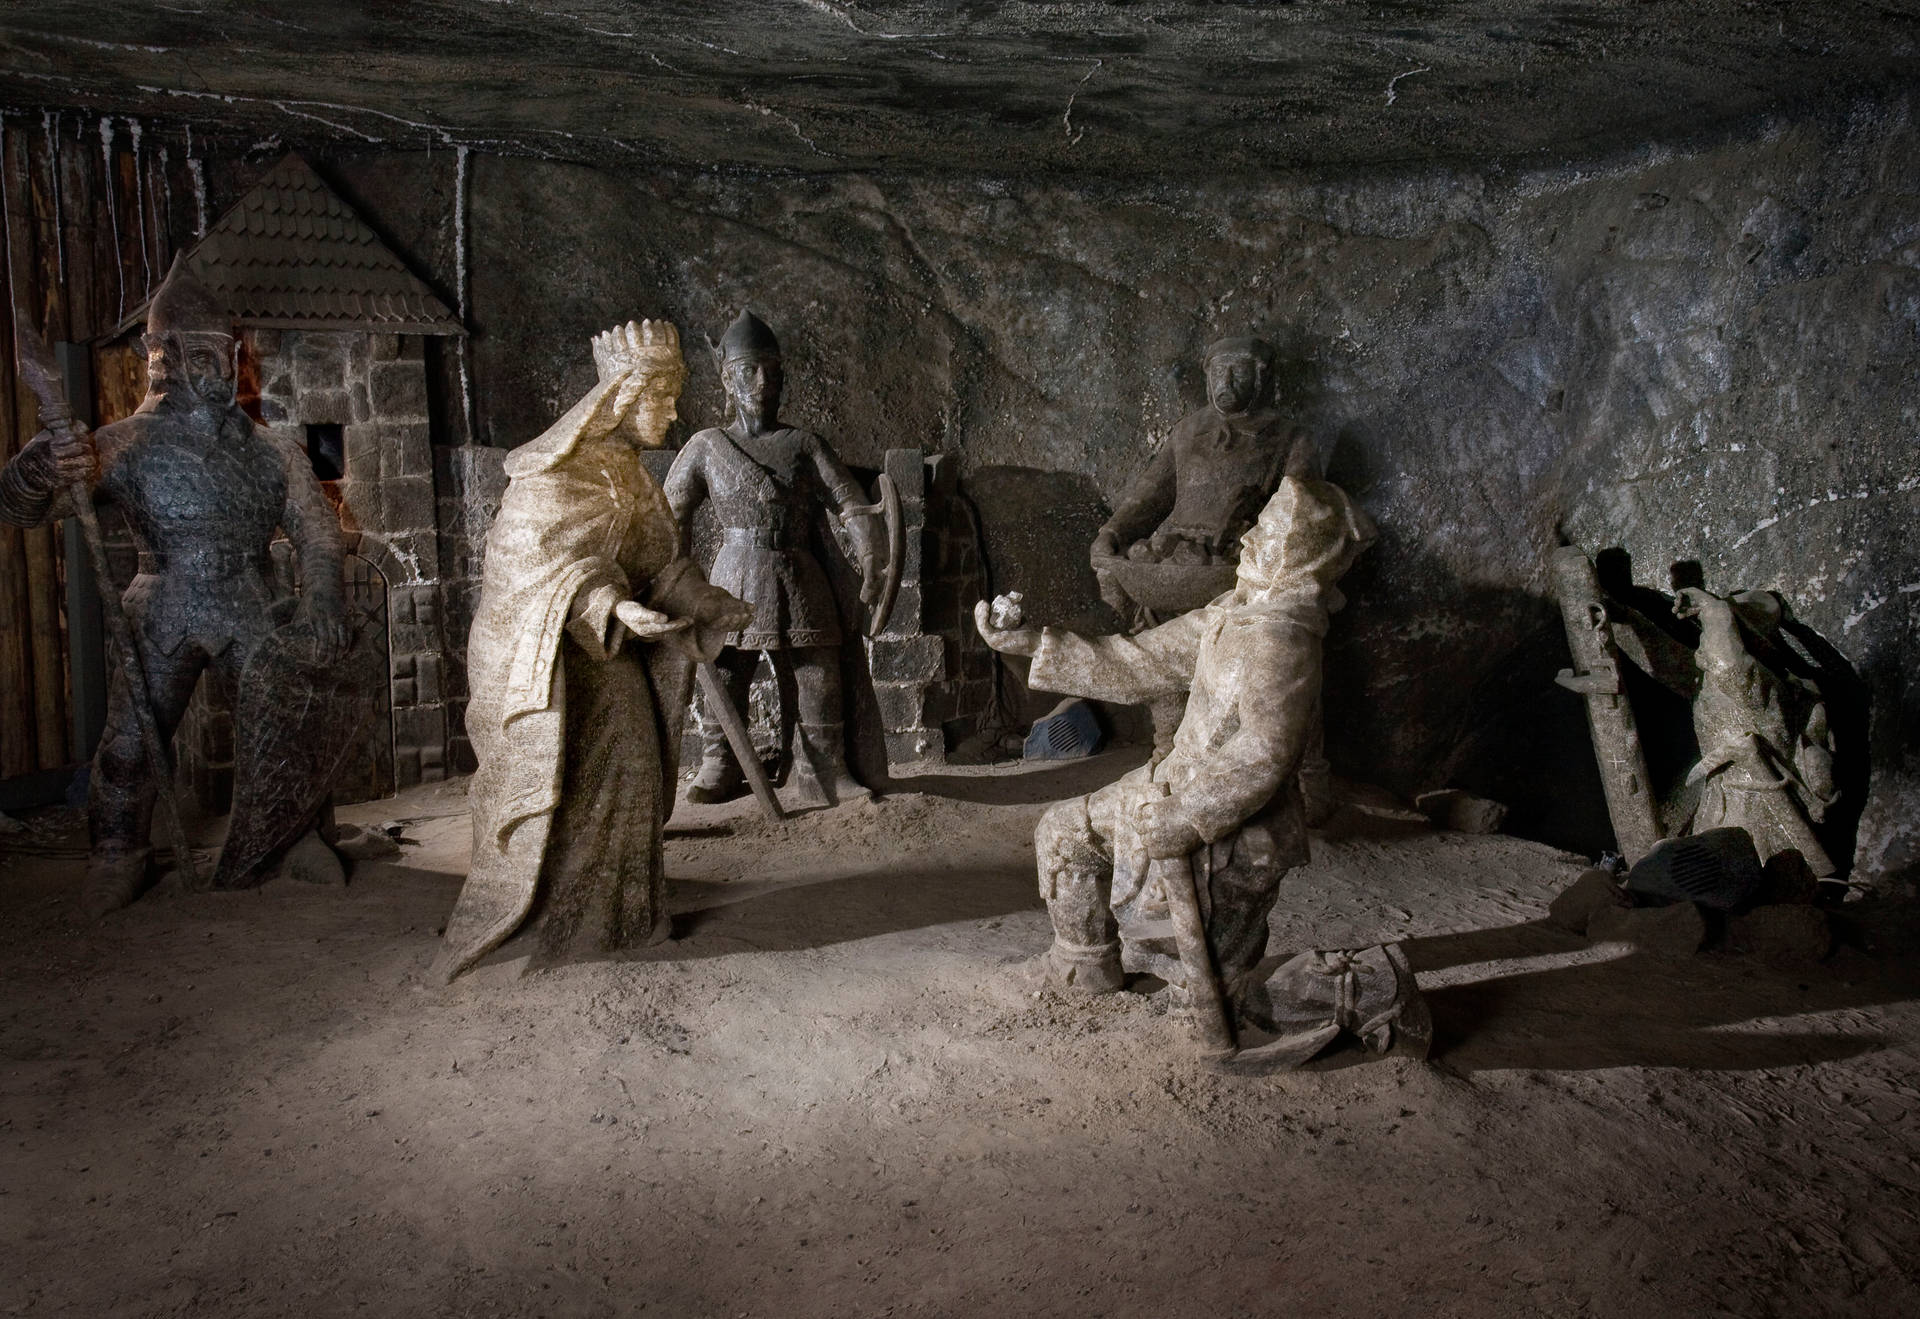 Poland's Prince Statue Salt Mine